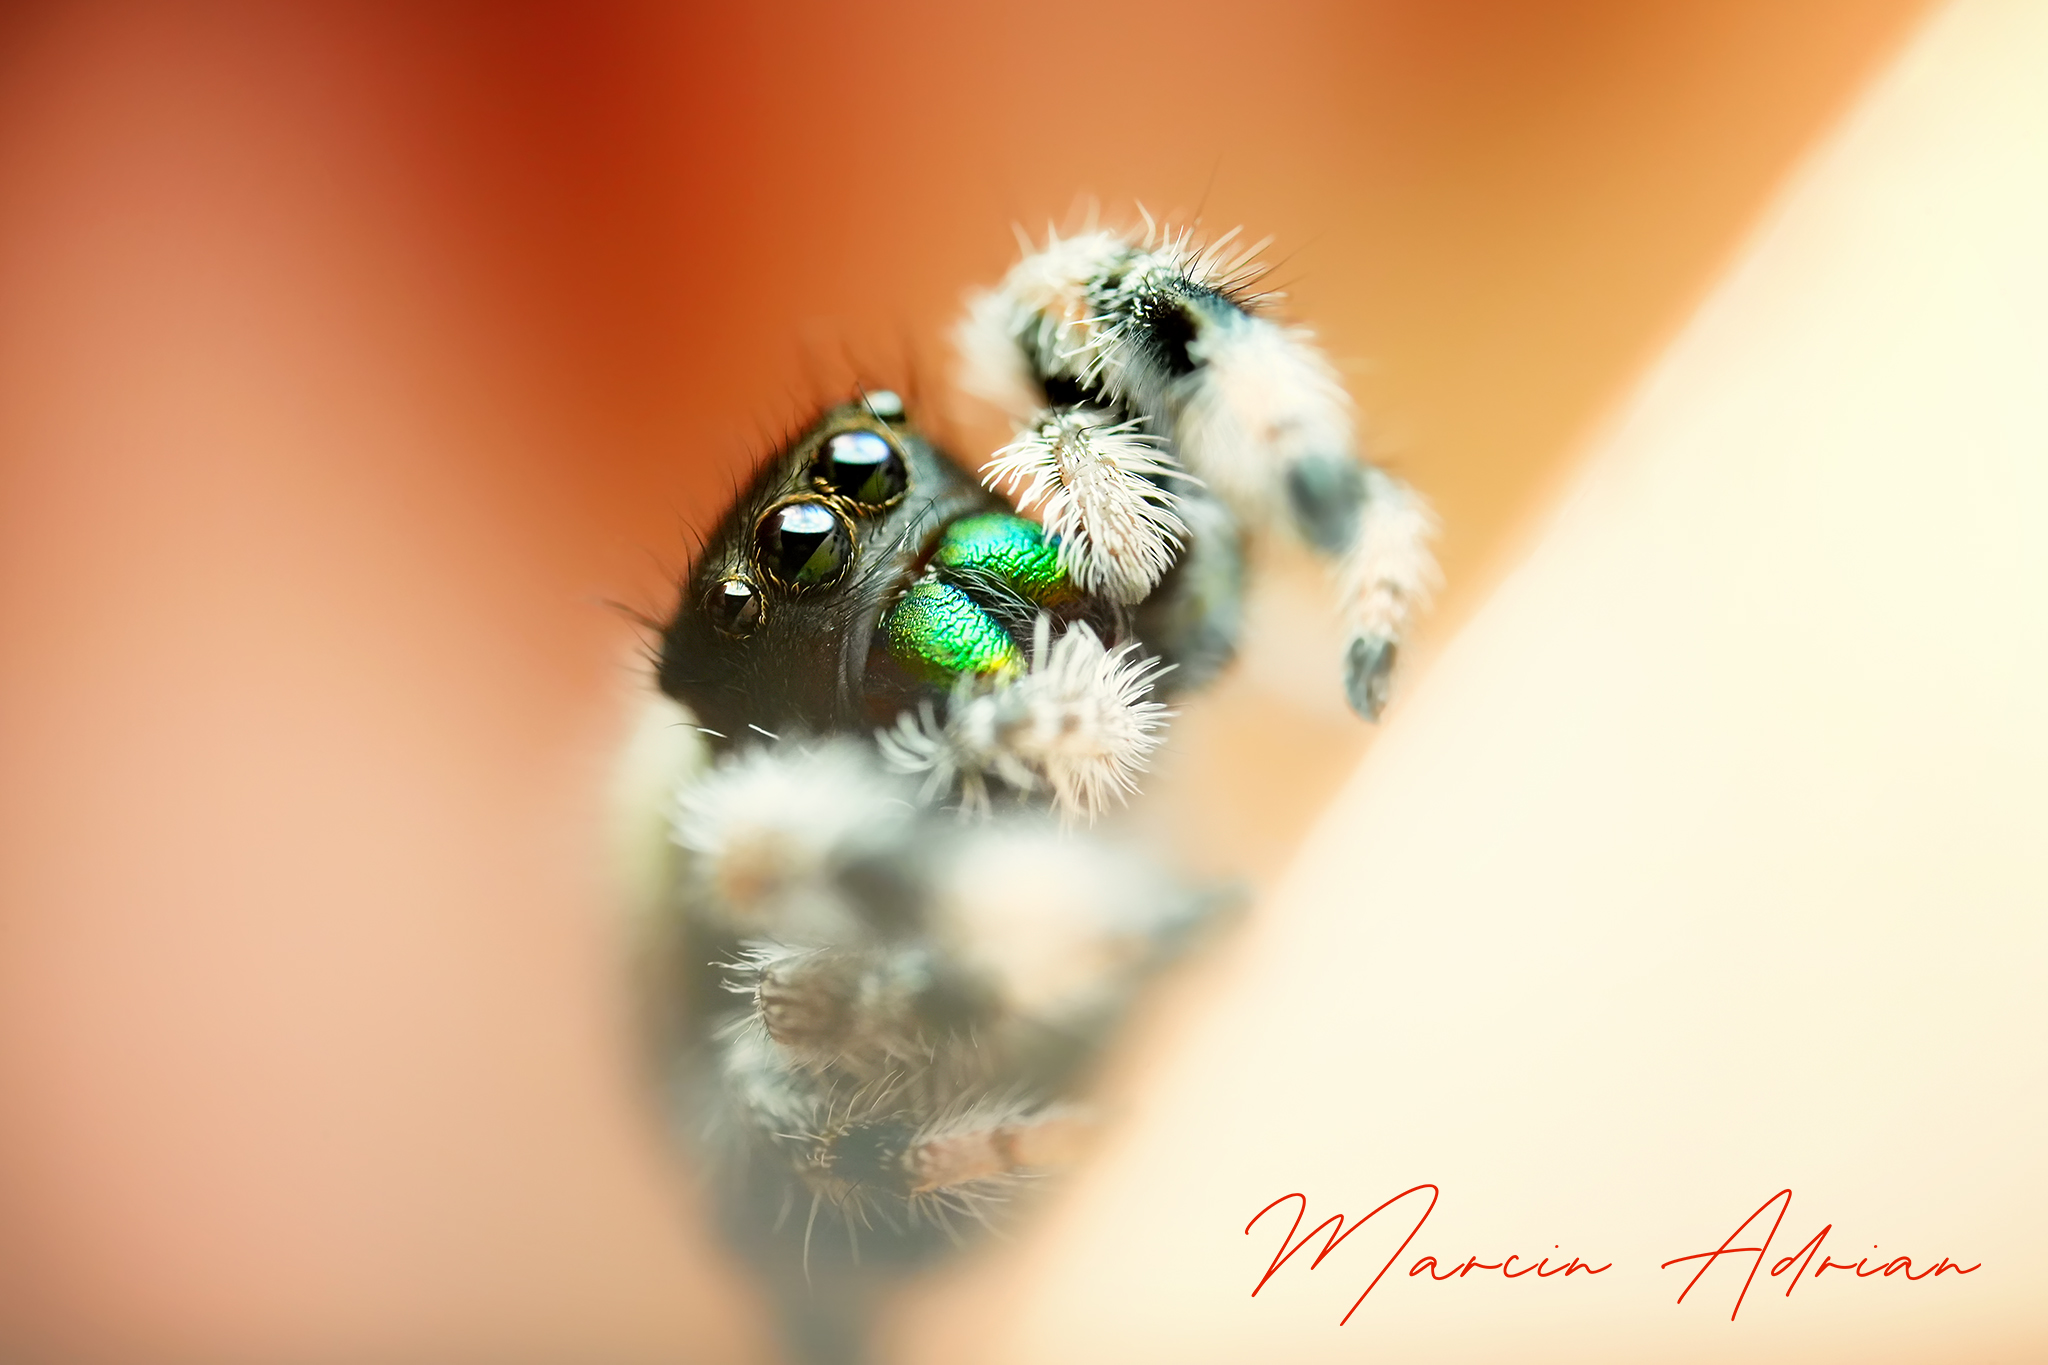 Phidippus regius Bahamas springspinnen, jumpingspider macro photography. Fotograf aus NRW - marcinadrian.de Aquaristik, Terraristik und Paludarium Fotograf